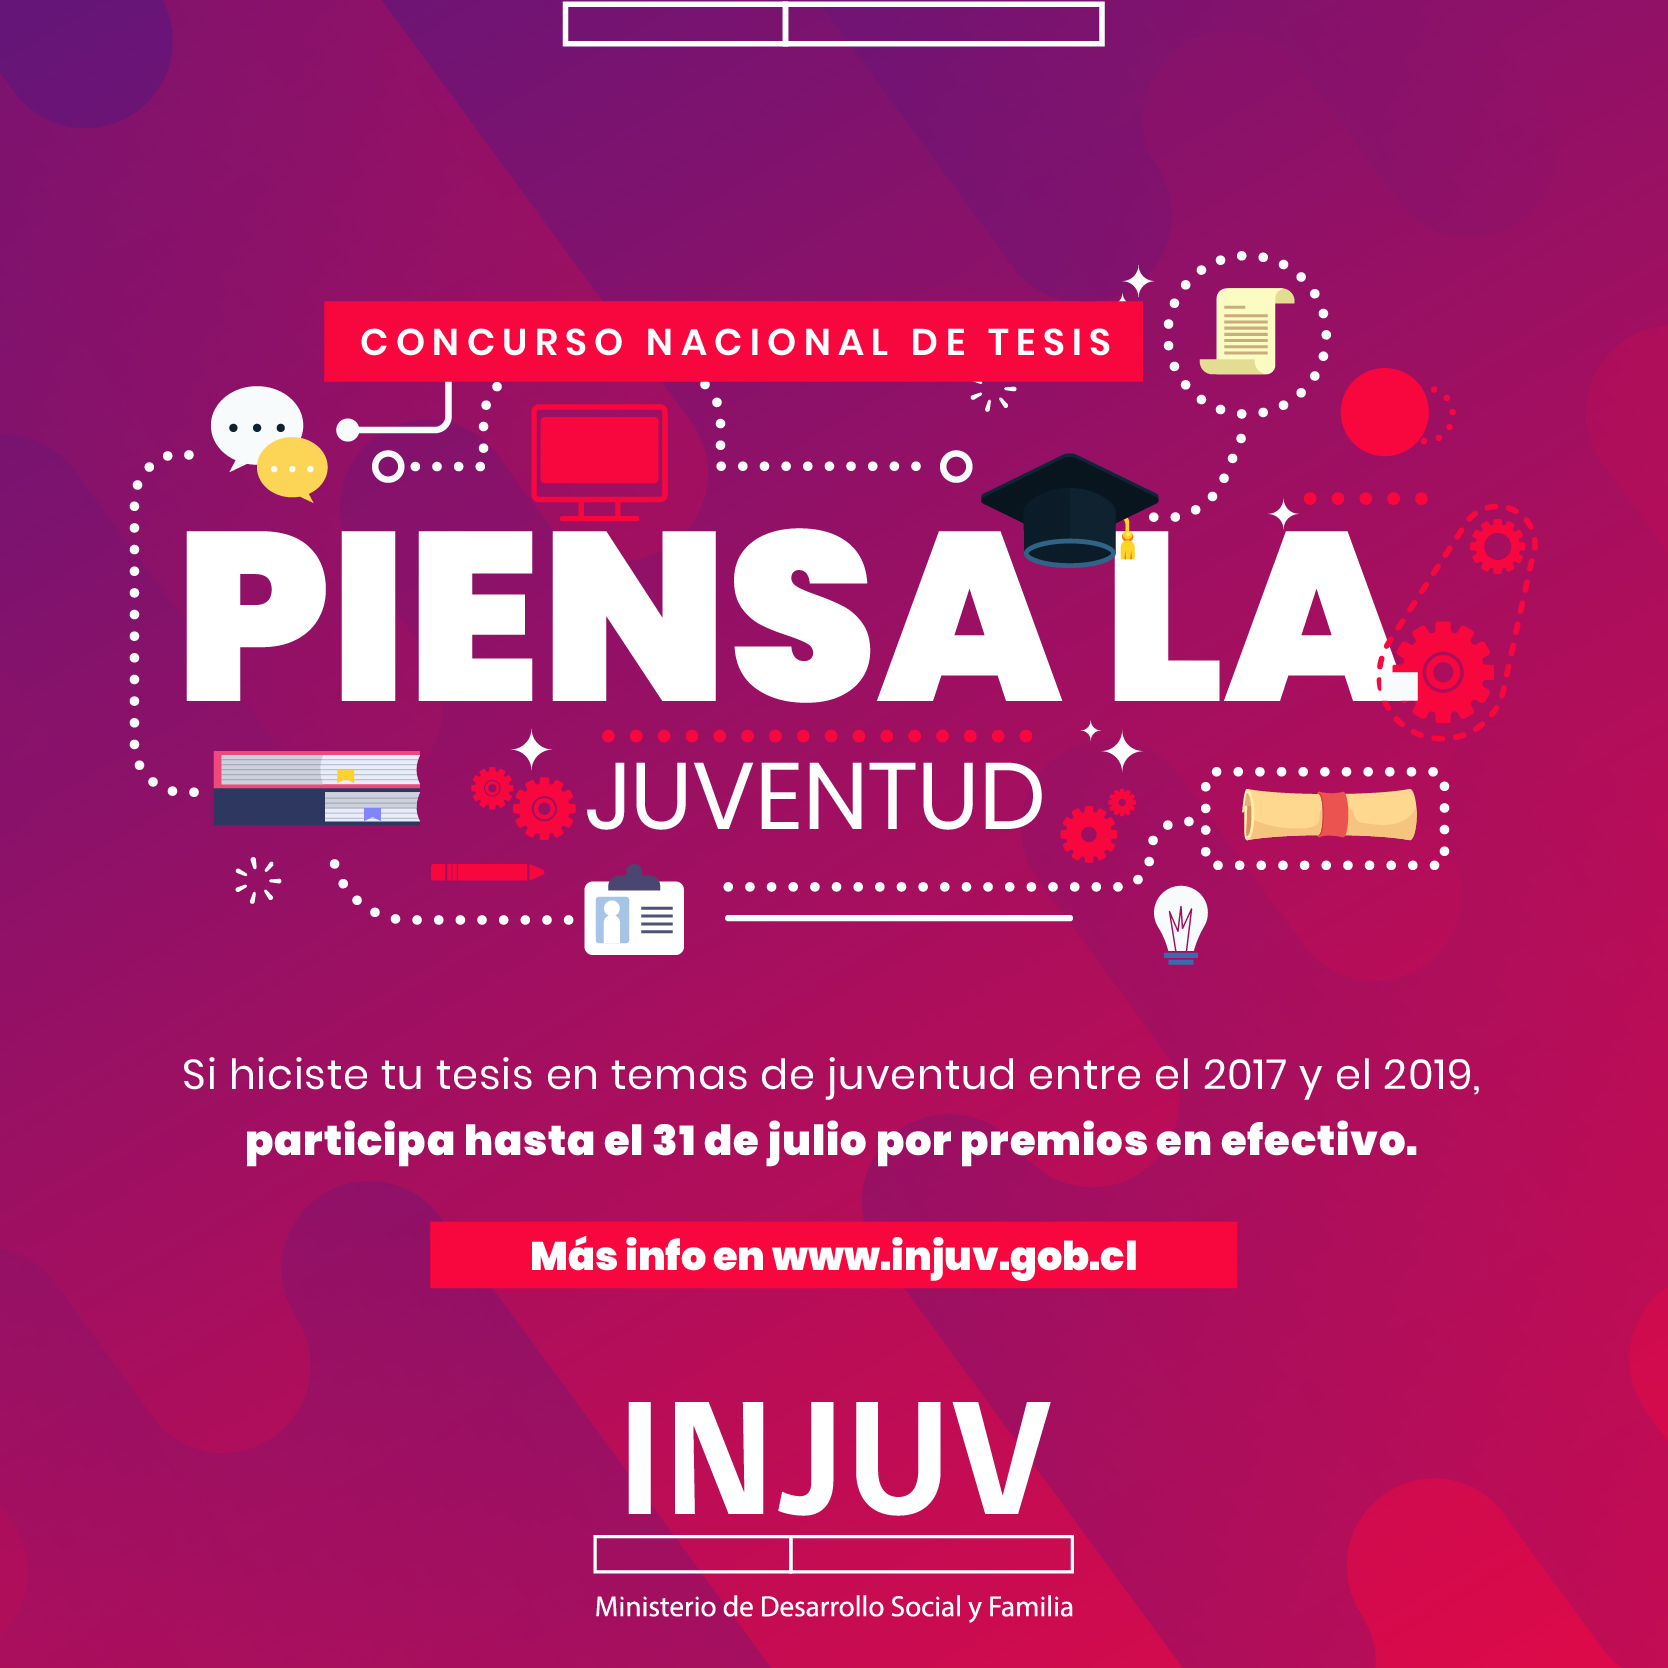 Hasta 1.2 millones: INJUV Magallanes premia tu tesis: iniciativa permitirá premiar  tesis o proyectos de títulos sobre temáticas alusivas a la juventud, entre los años 2017 y 2019